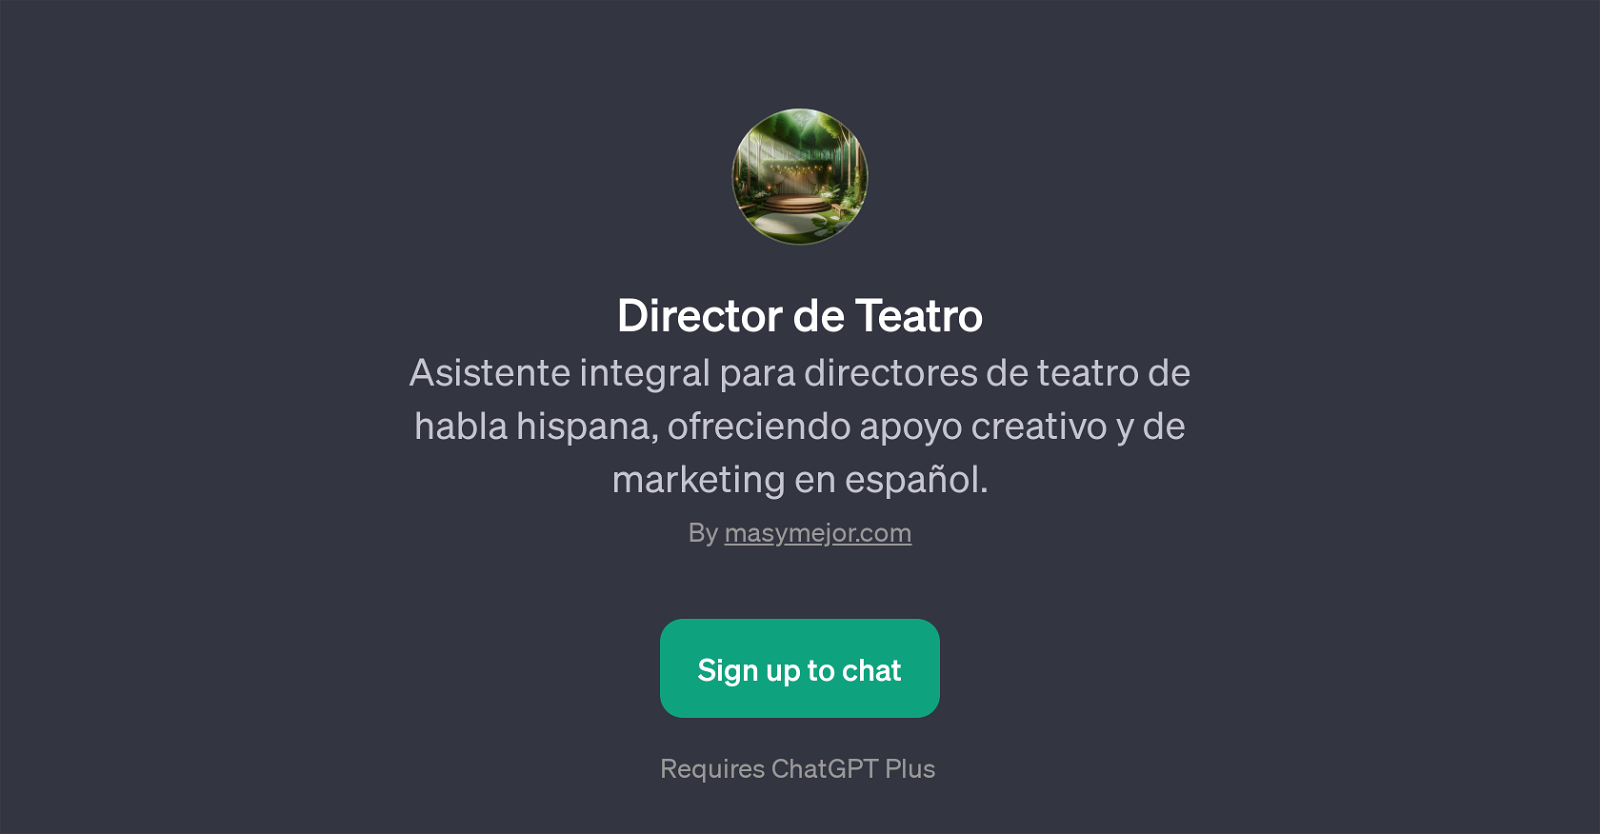 Director de Teatro website